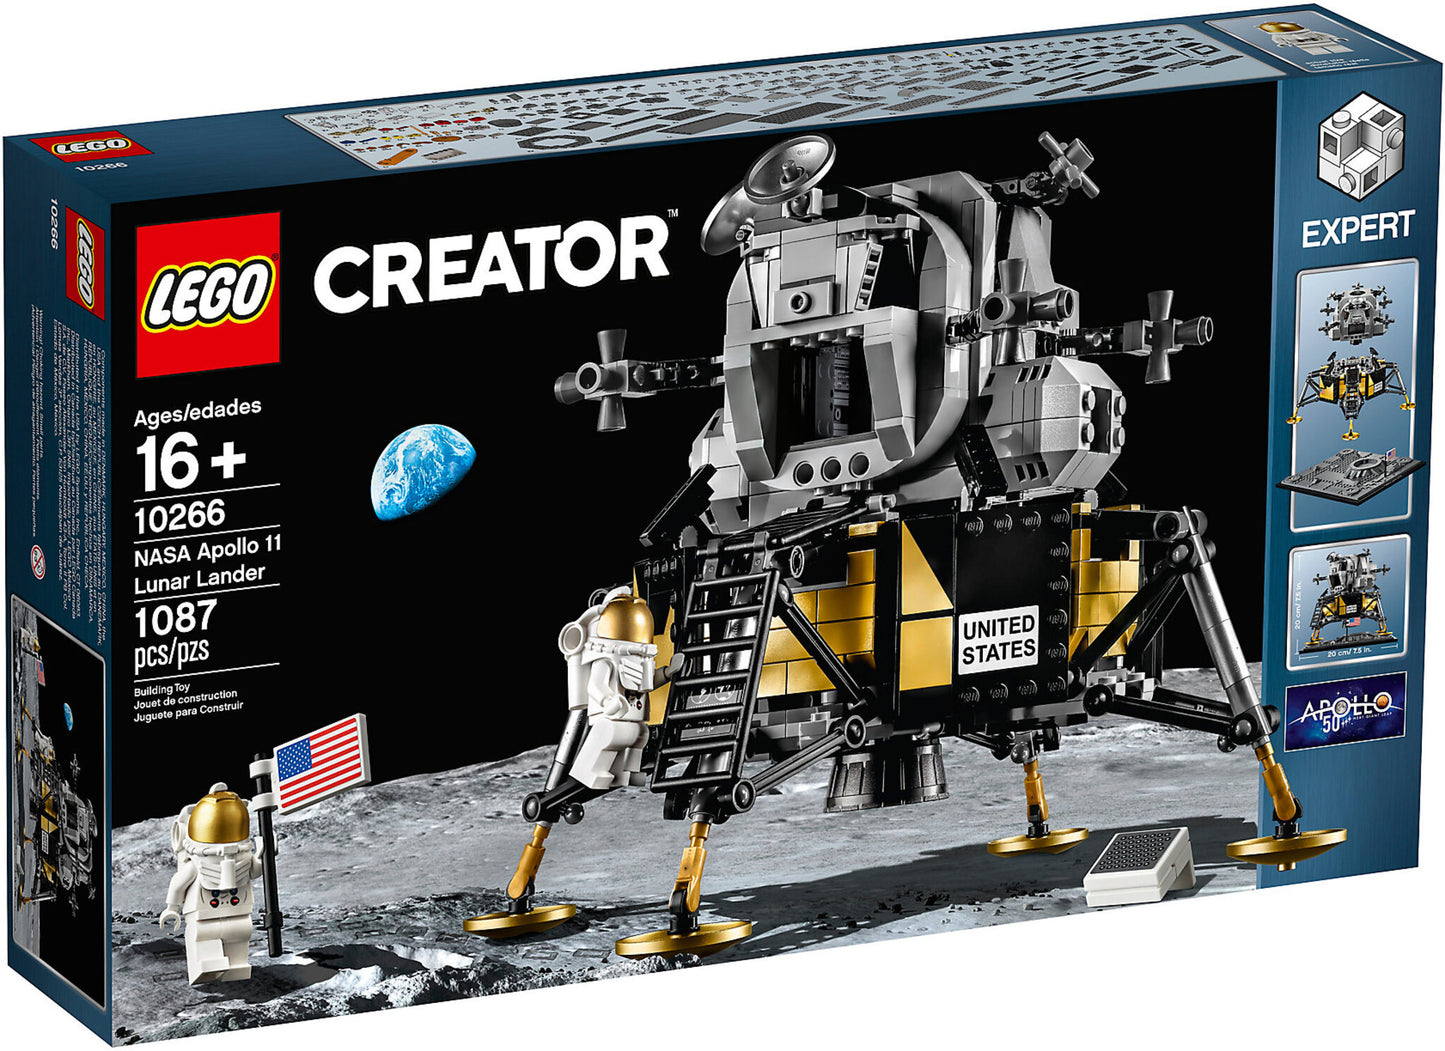 10266 LEGO Creator - Nasa Apollo 11 Lunar Lander